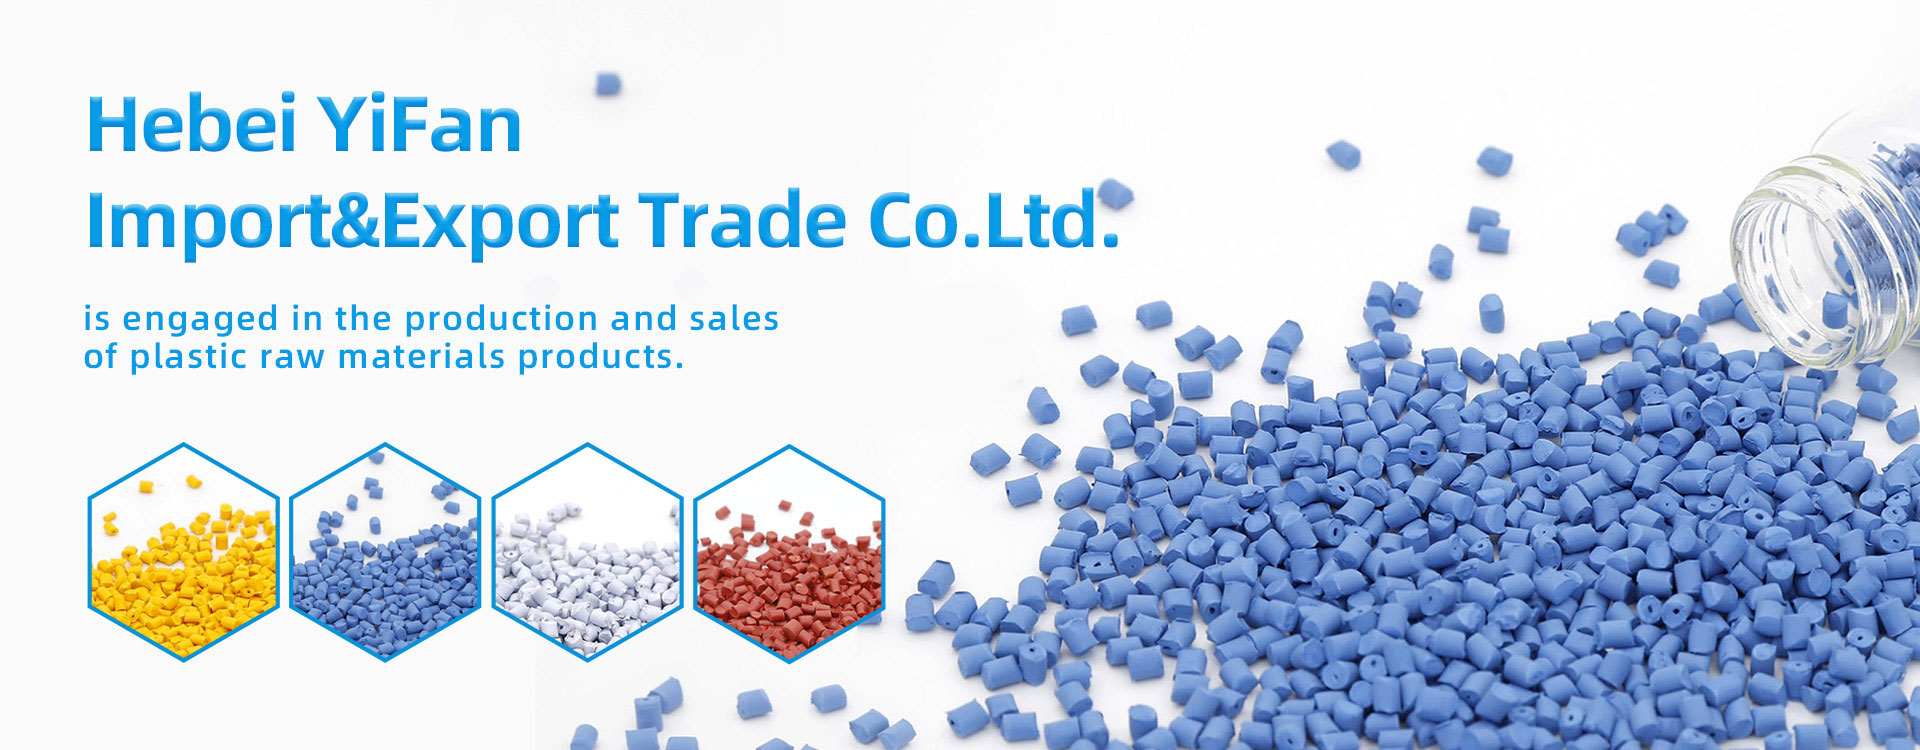 Hebei Import&Export Trade Co., Ltd.